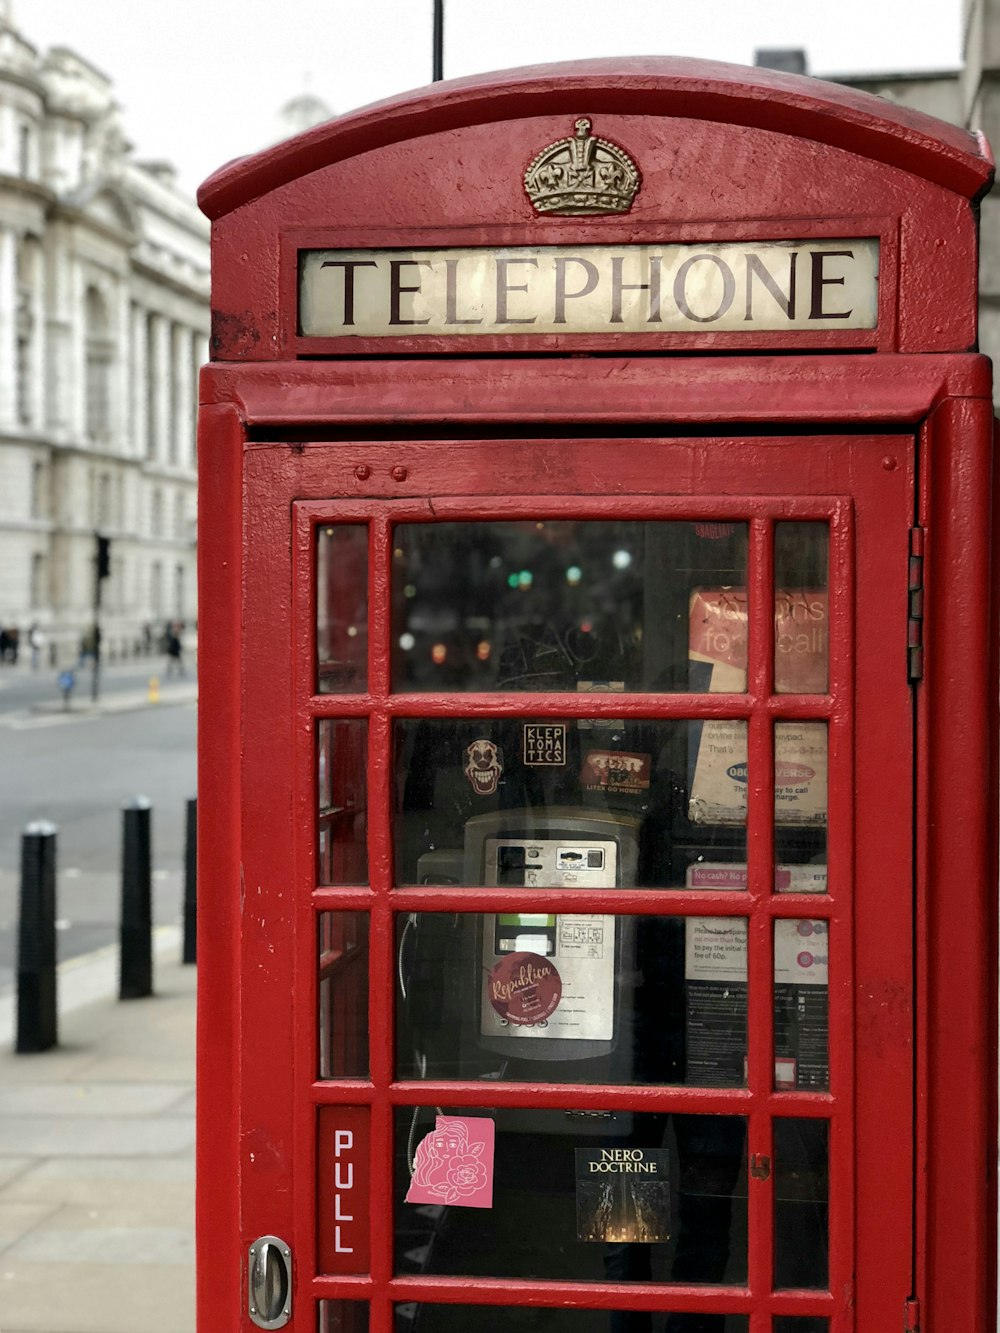 cabine téléphonique rouge